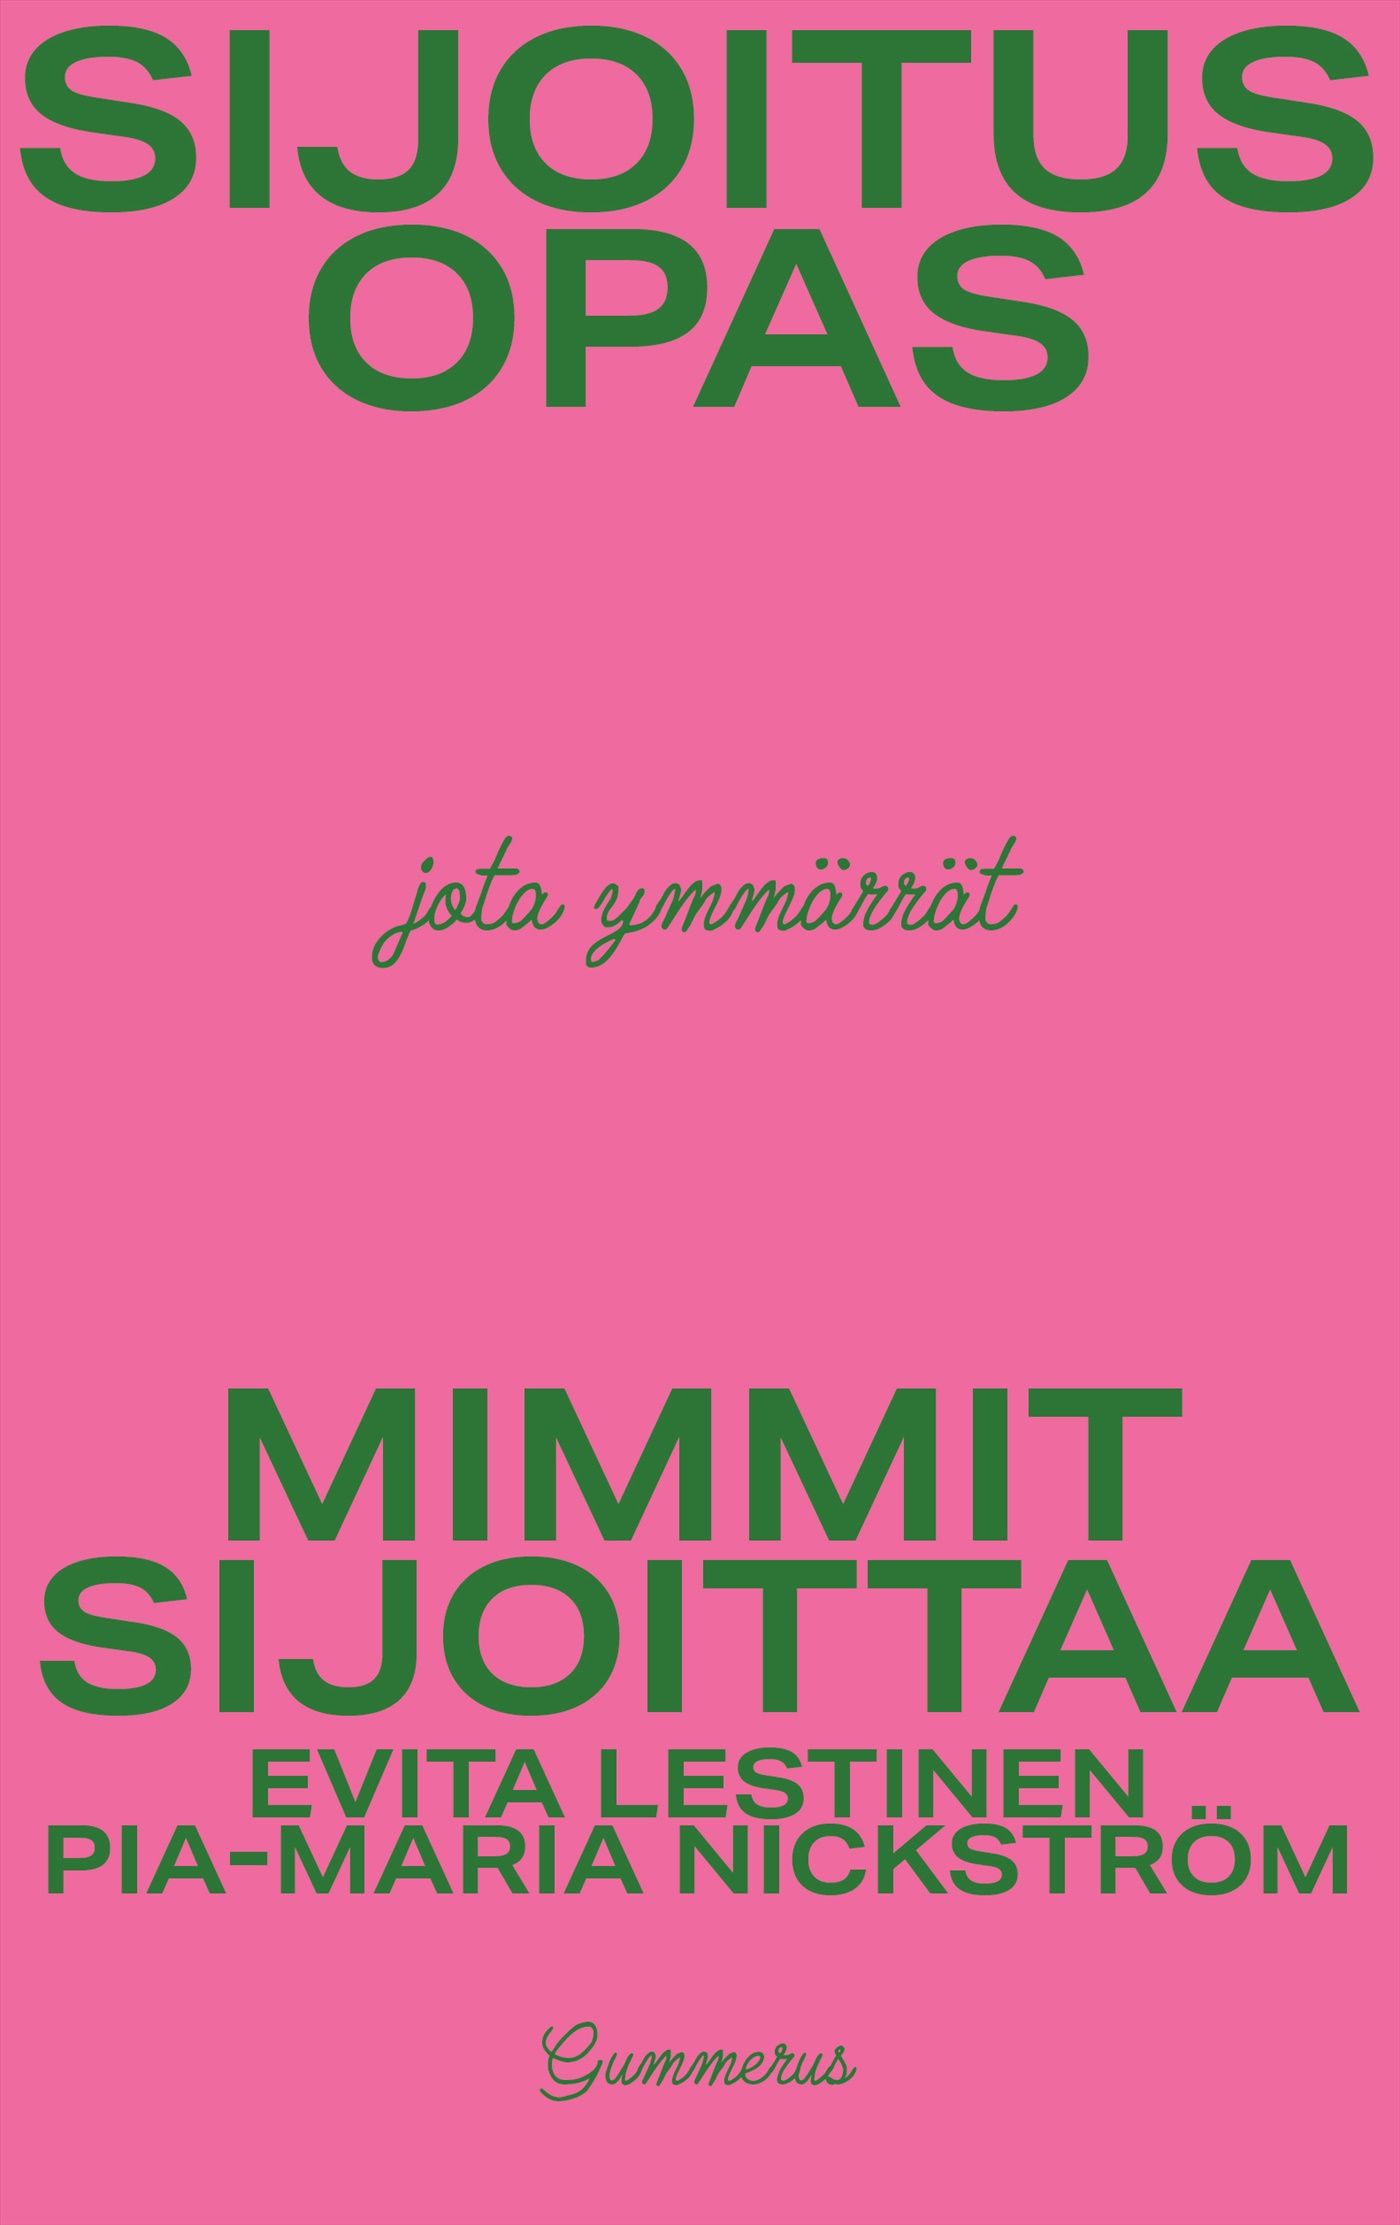 Evita Lestinen & Pia-Maria Nickström : Mimmit sijoittaa - Sijoitusopas